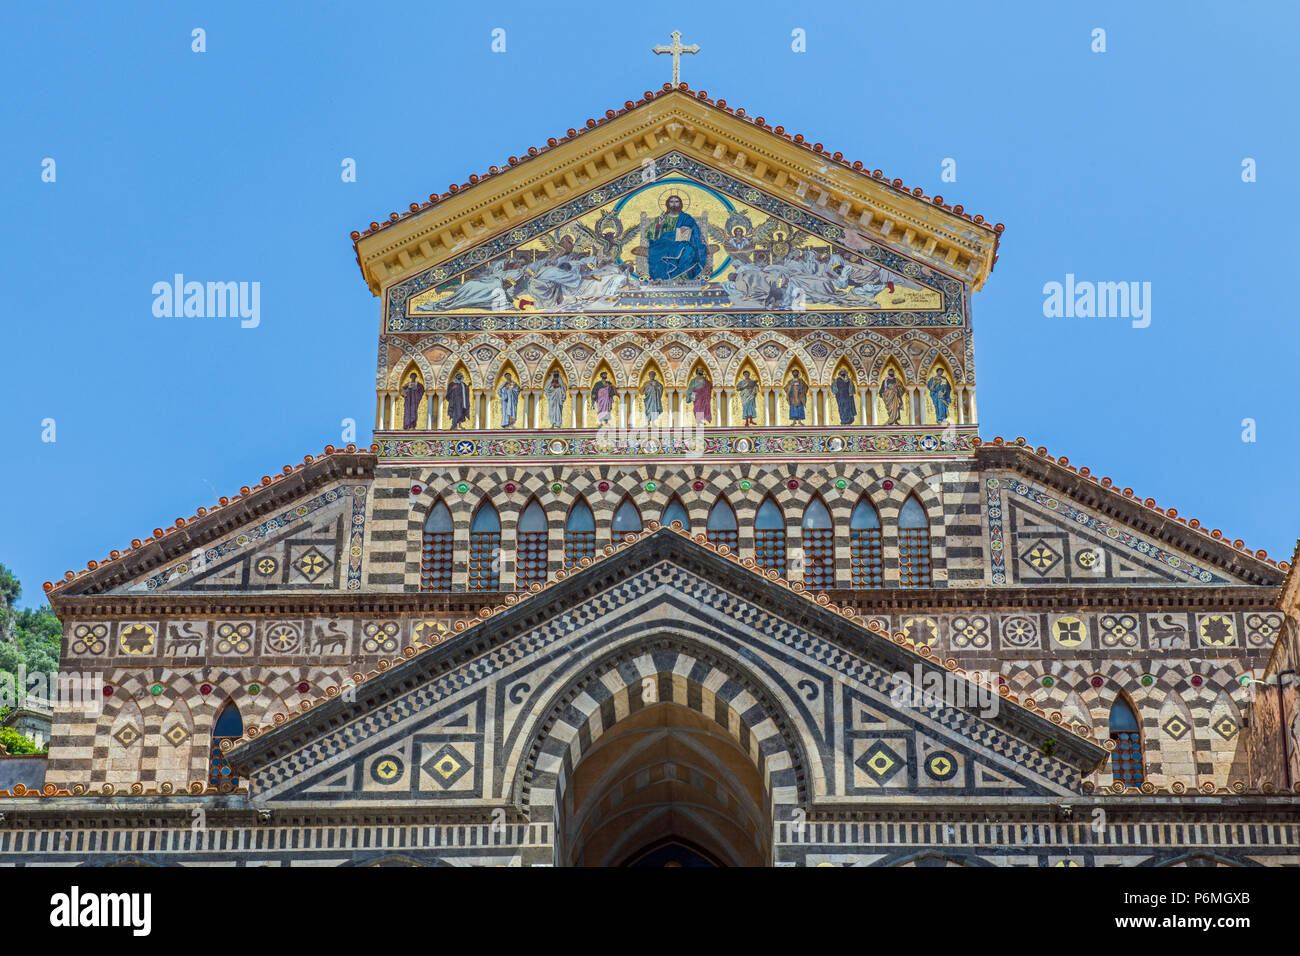 The Roman Catholic Cathedral of Amalfi on the Amalfi Coast, Italy Stock Photo